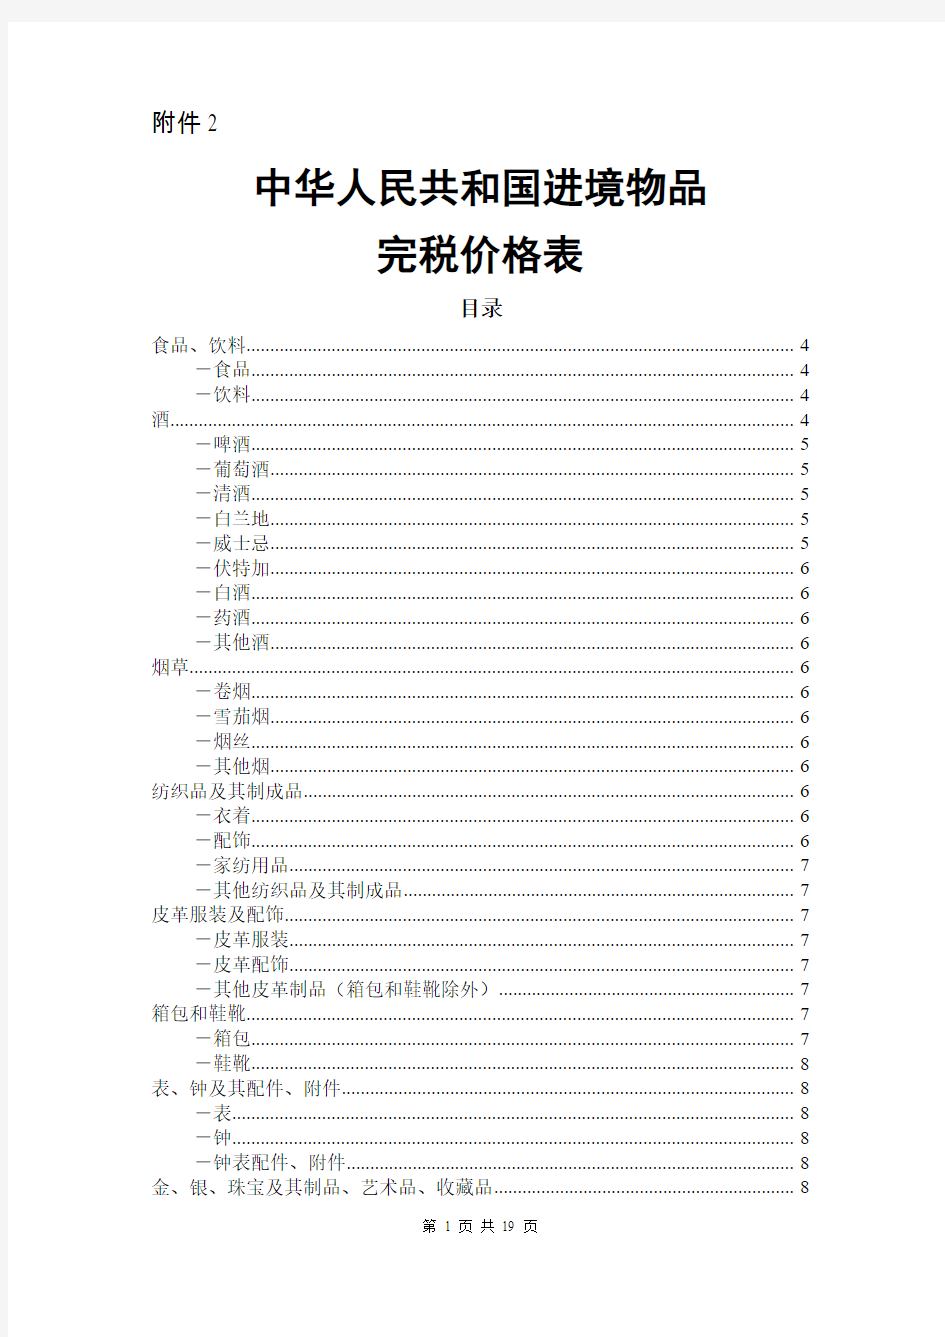 2012中华人民共和国进境物品完税价格表